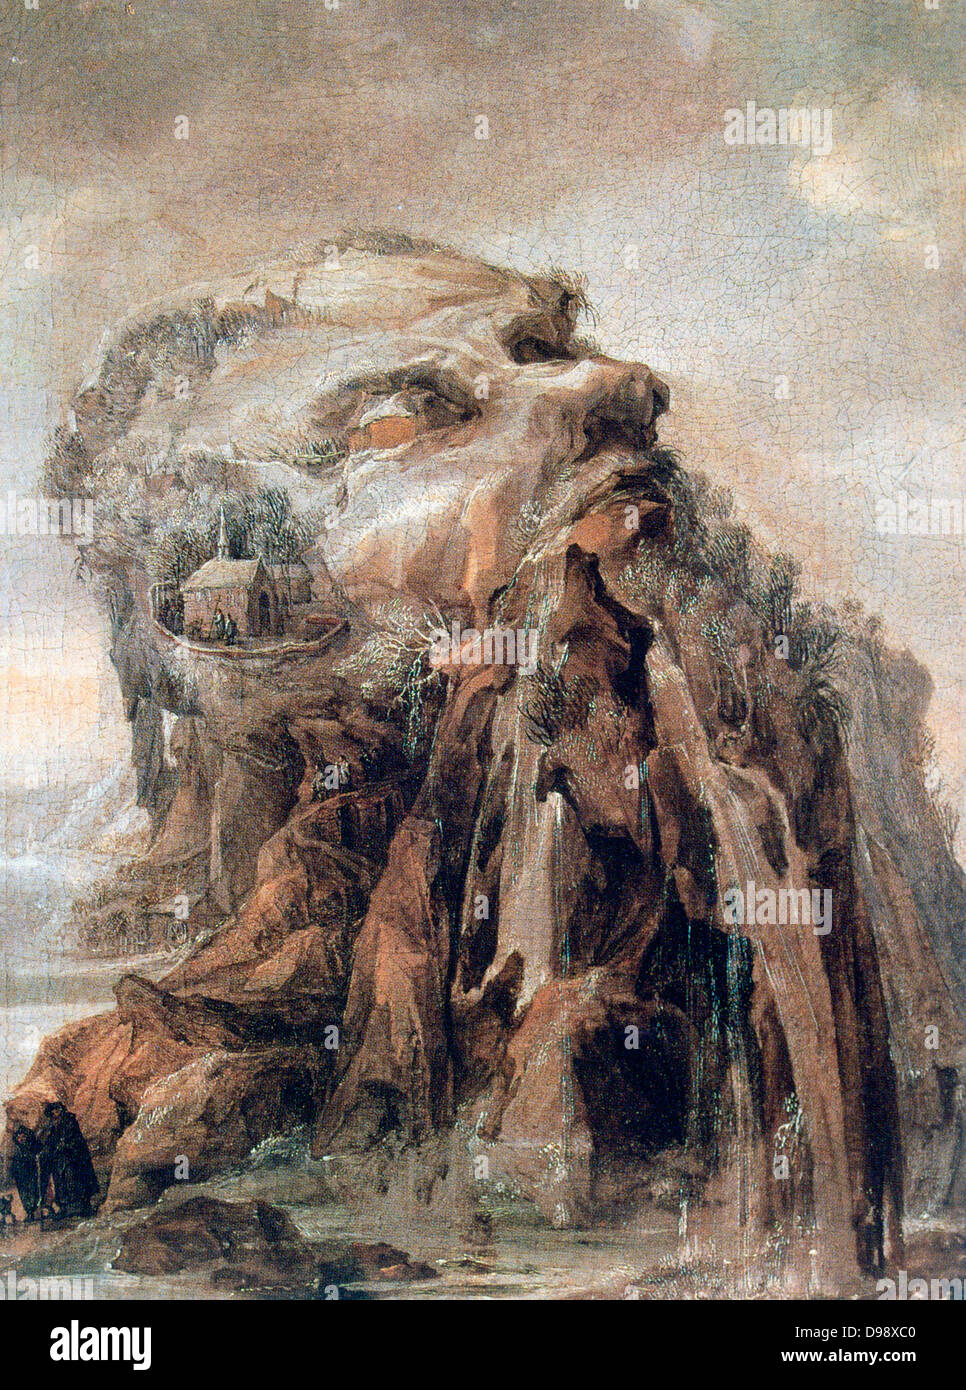 Les Quatre Saisons - Allégorie de l'Hiver' paysage anthropomorphe Huile sur bois. Joos ou Josse de Momper le jeune (1564-1635) peintre flamand. Banque D'Images